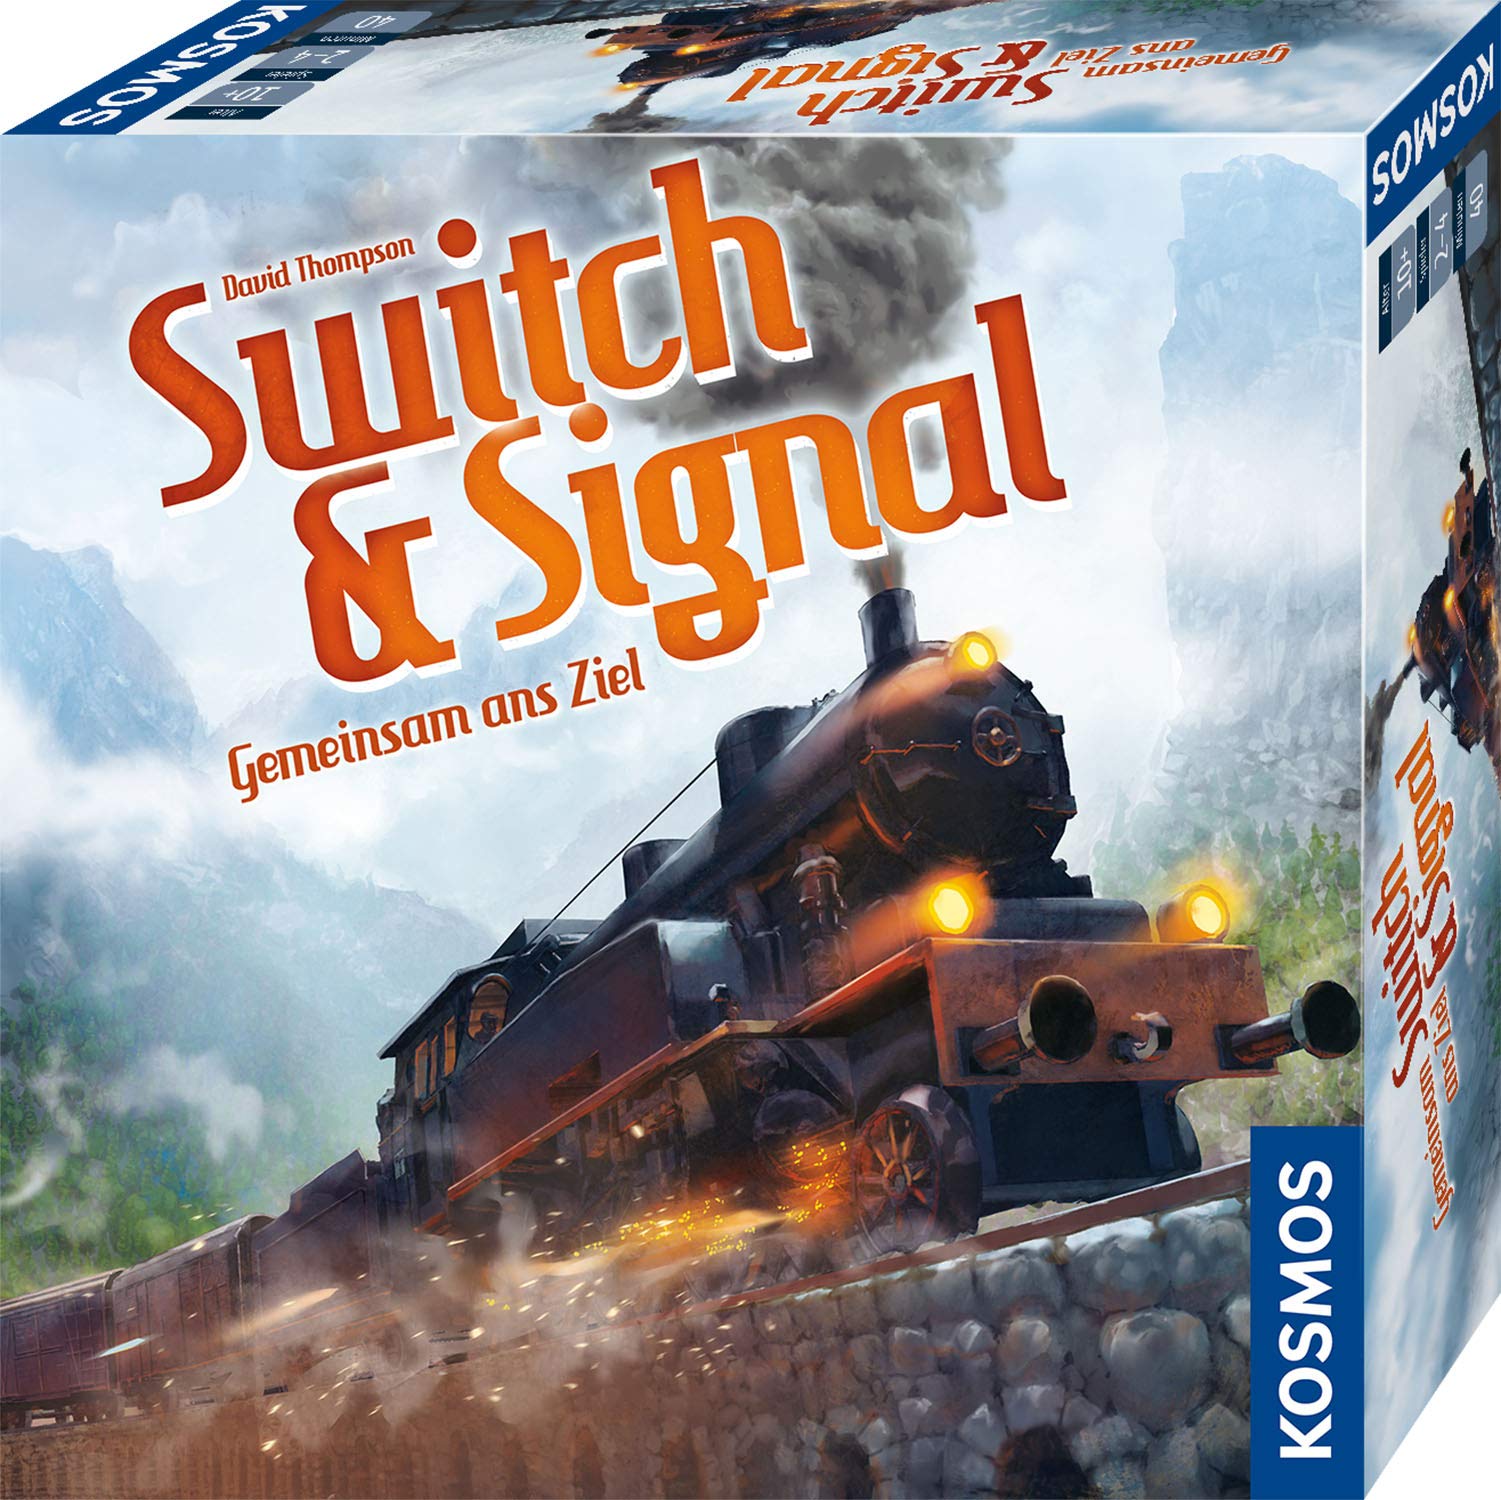 Kosmos 694265 Switch & Signal, Gemeinsam ans Ziel, kooperatives Eisenbahn-Spiel für 2-4 Spieler, ab 10 Jahre, Gesellschaftsspiel mit einfachen Regeln, Silver